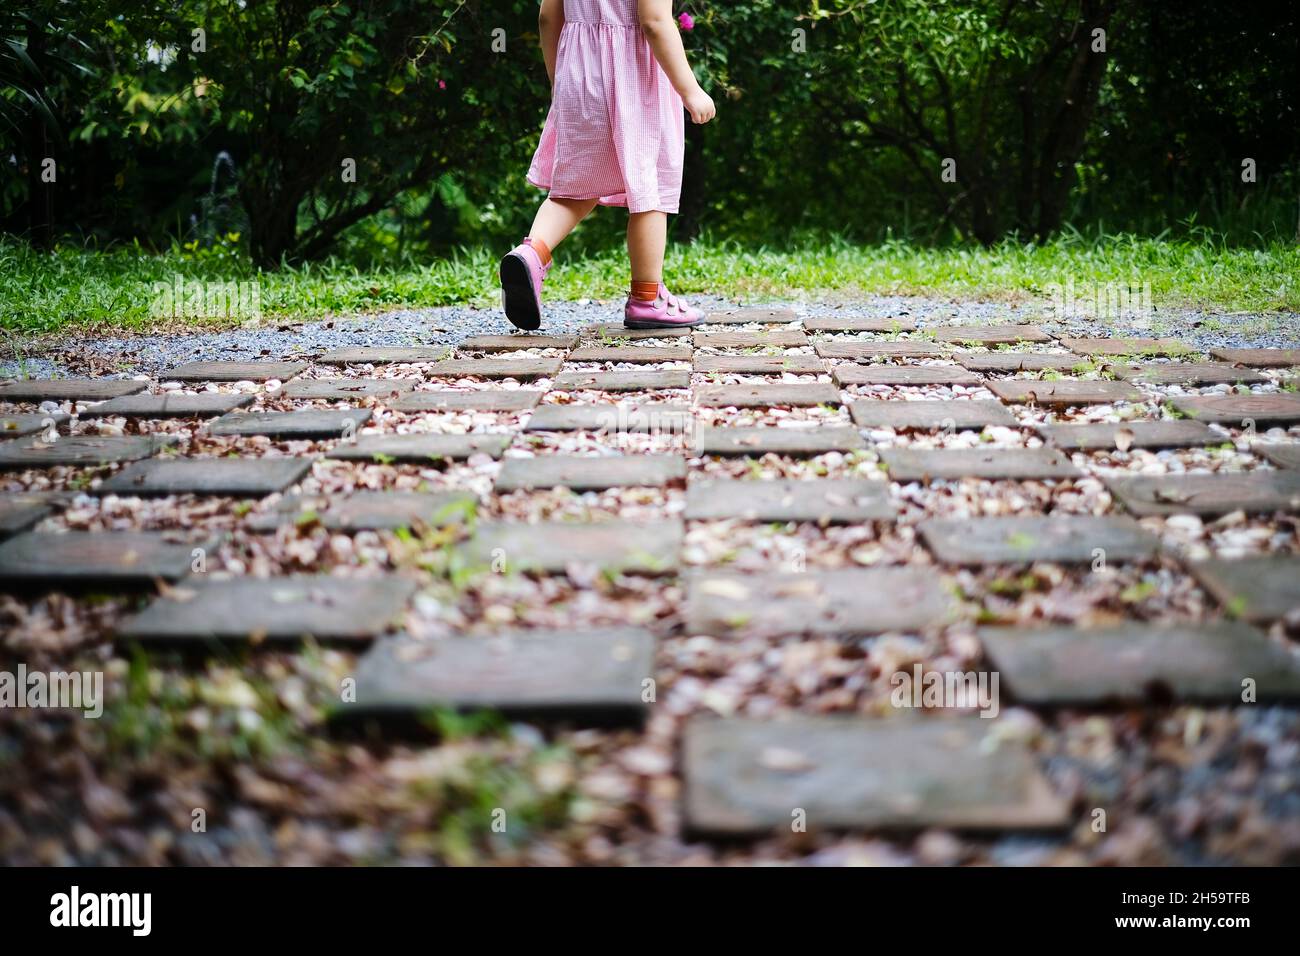 Une vue arrière moitié inférieure du corps photo d'une petite fille en robe rouge et blanche marchant sur un pavé de pierre et de gravier à l'intérieur d'un jardin avec des buissons verts en t Banque D'Images